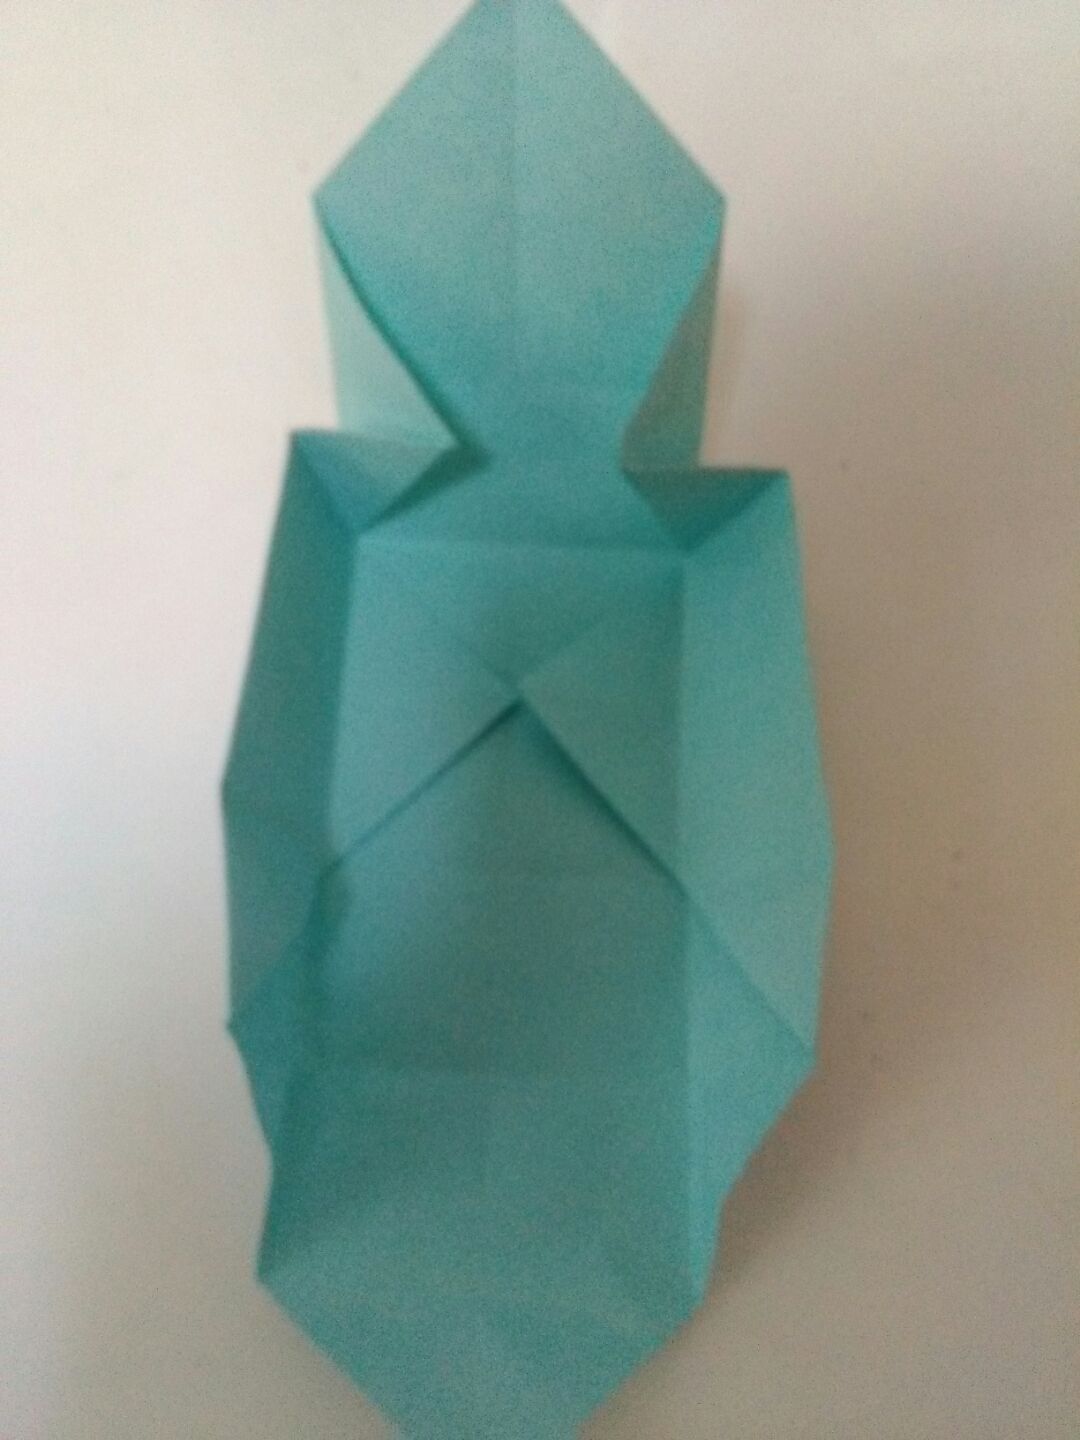 手工折纸糖果盒的折法图解教程（简单折纸小白兔步骤图解说明） - 有点网 - 好手艺